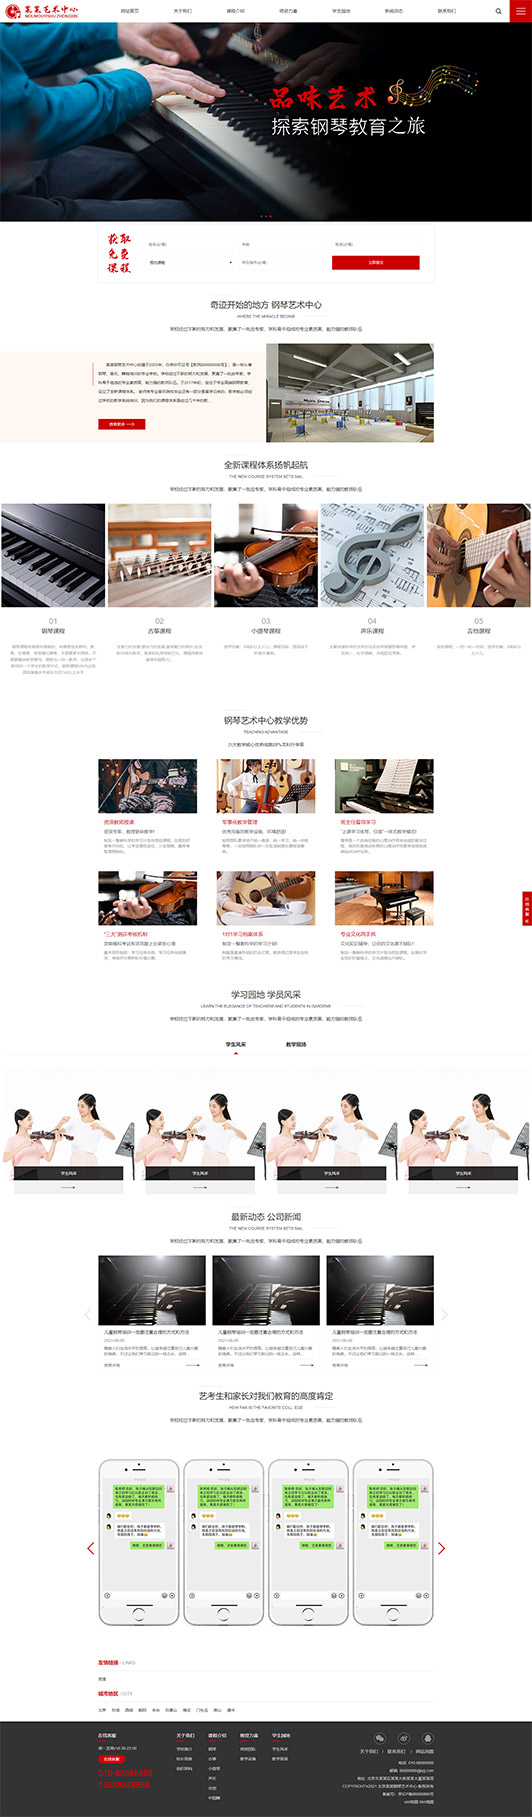 渭南钢琴艺术培训公司响应式企业网站